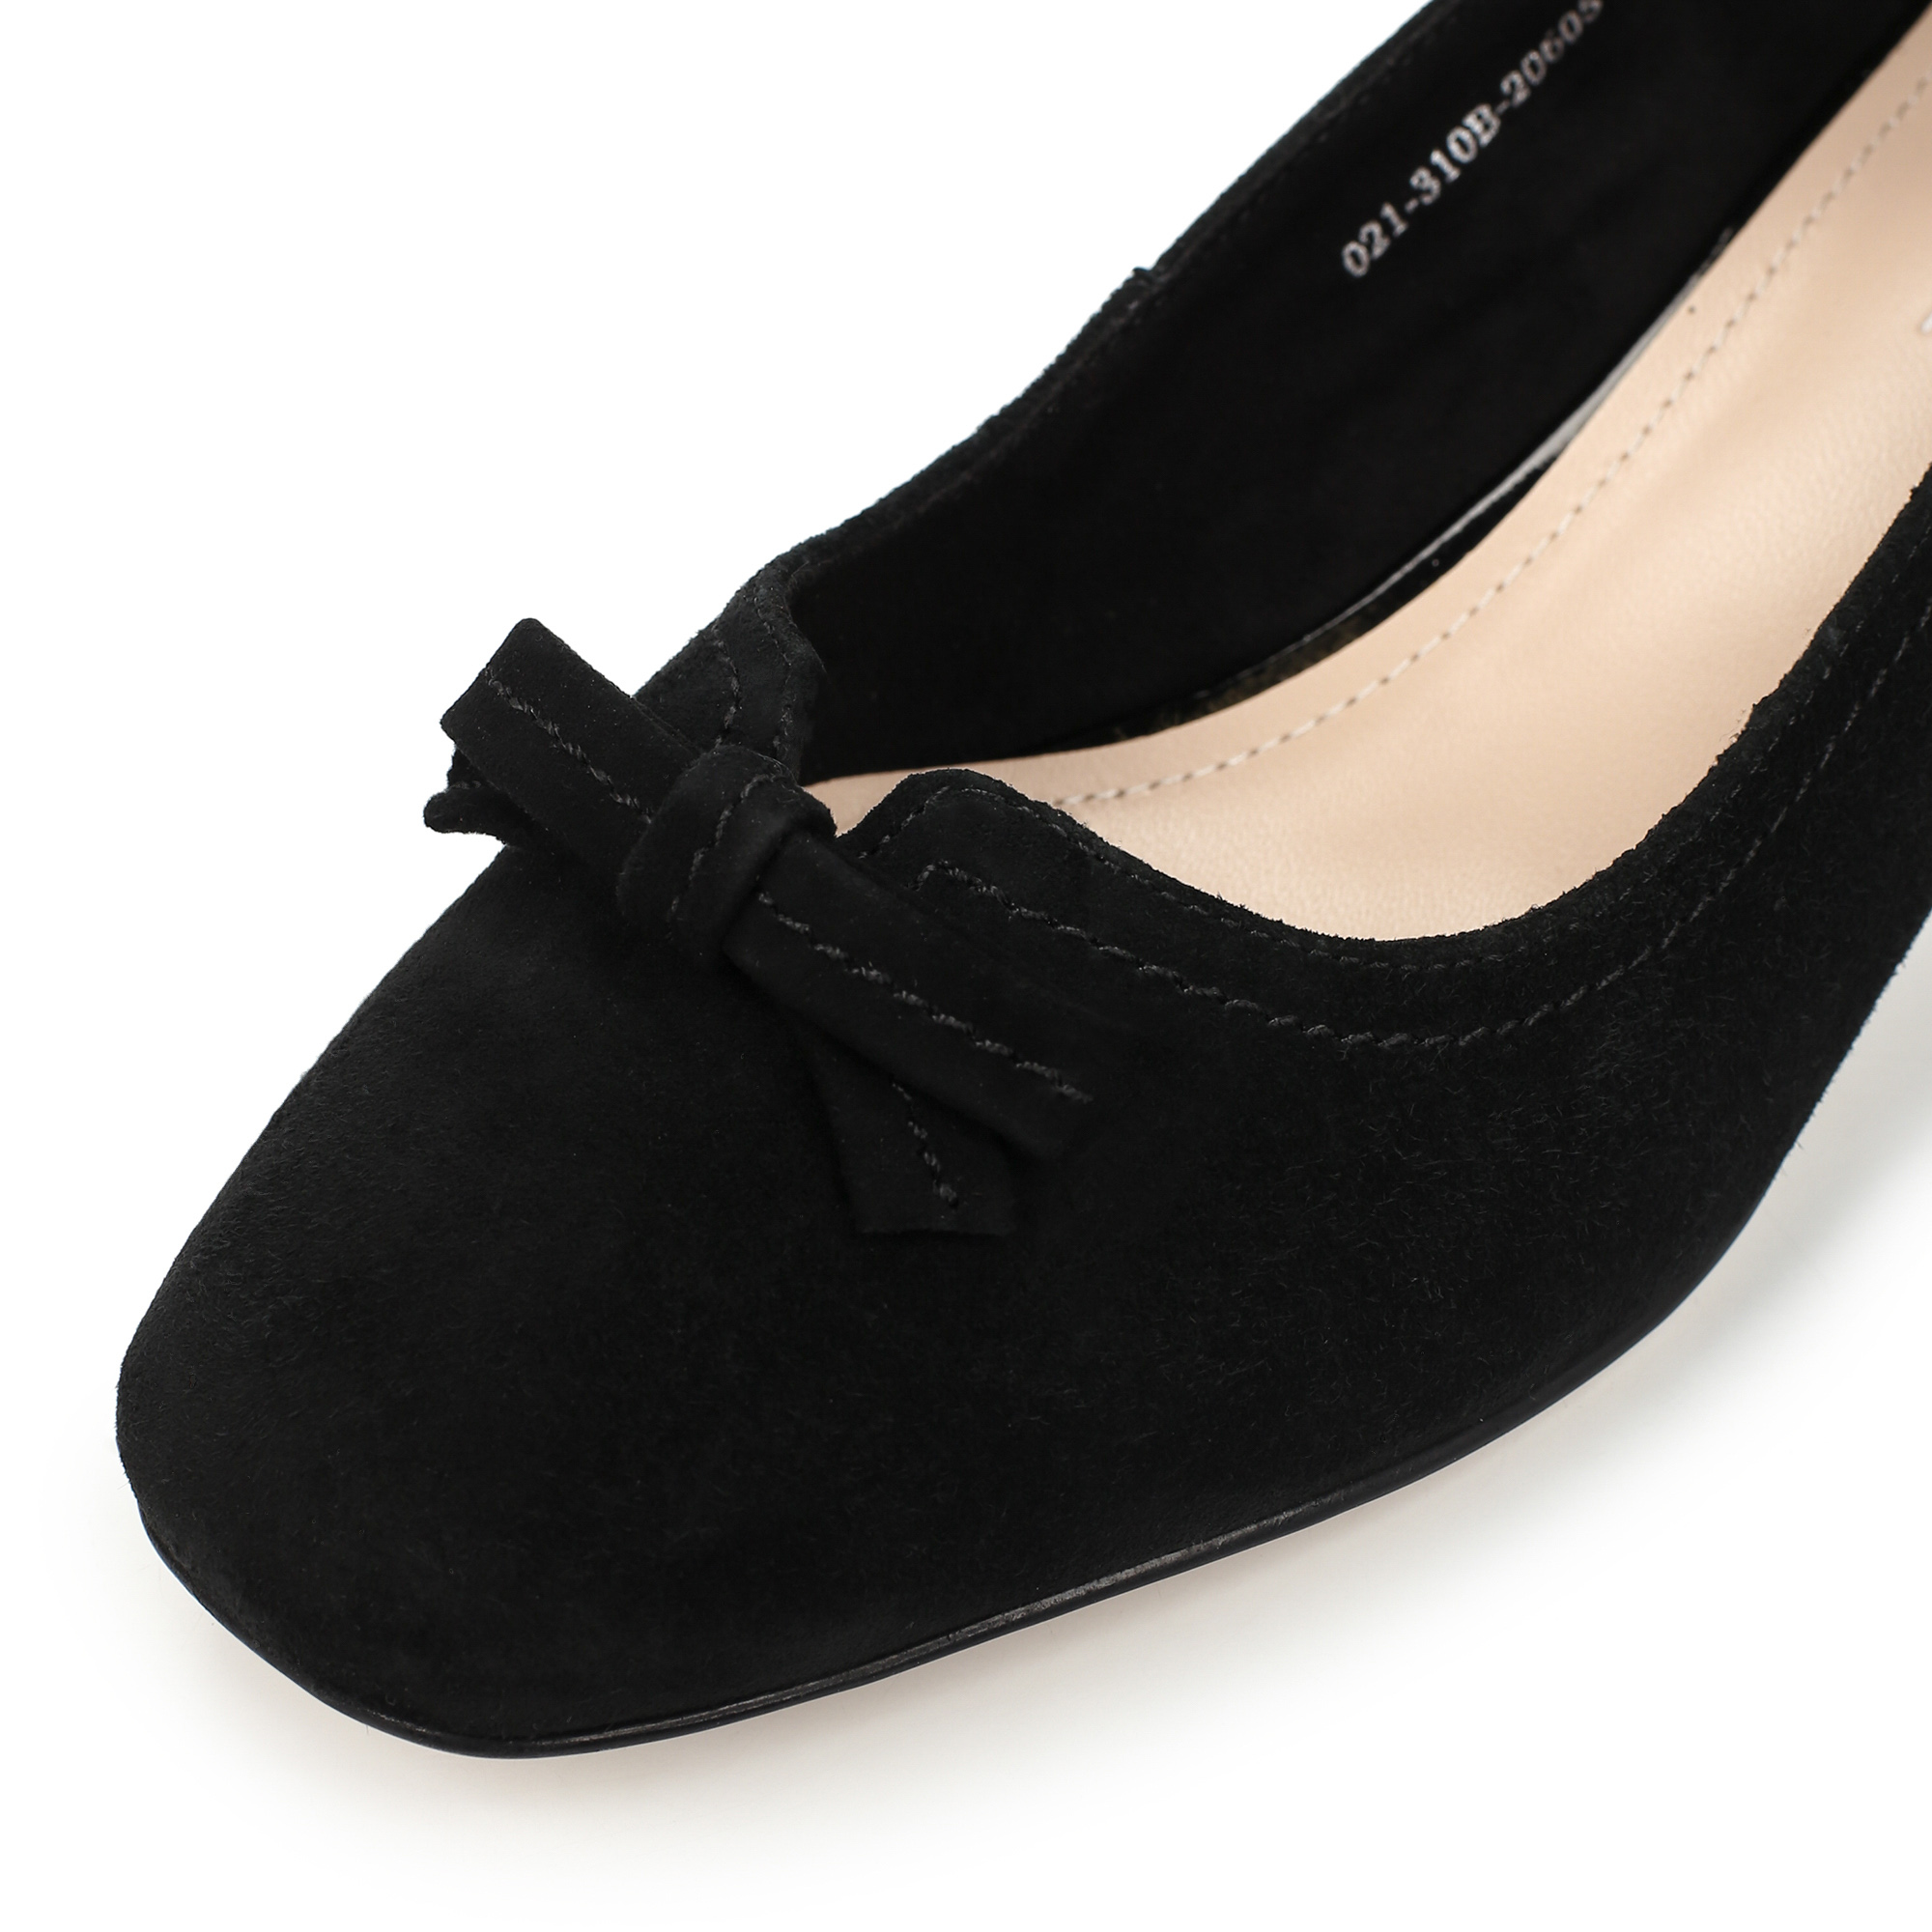 Туфли Thomas Munz 021-310B-20605, цвет черный, размер 39 - фото 6